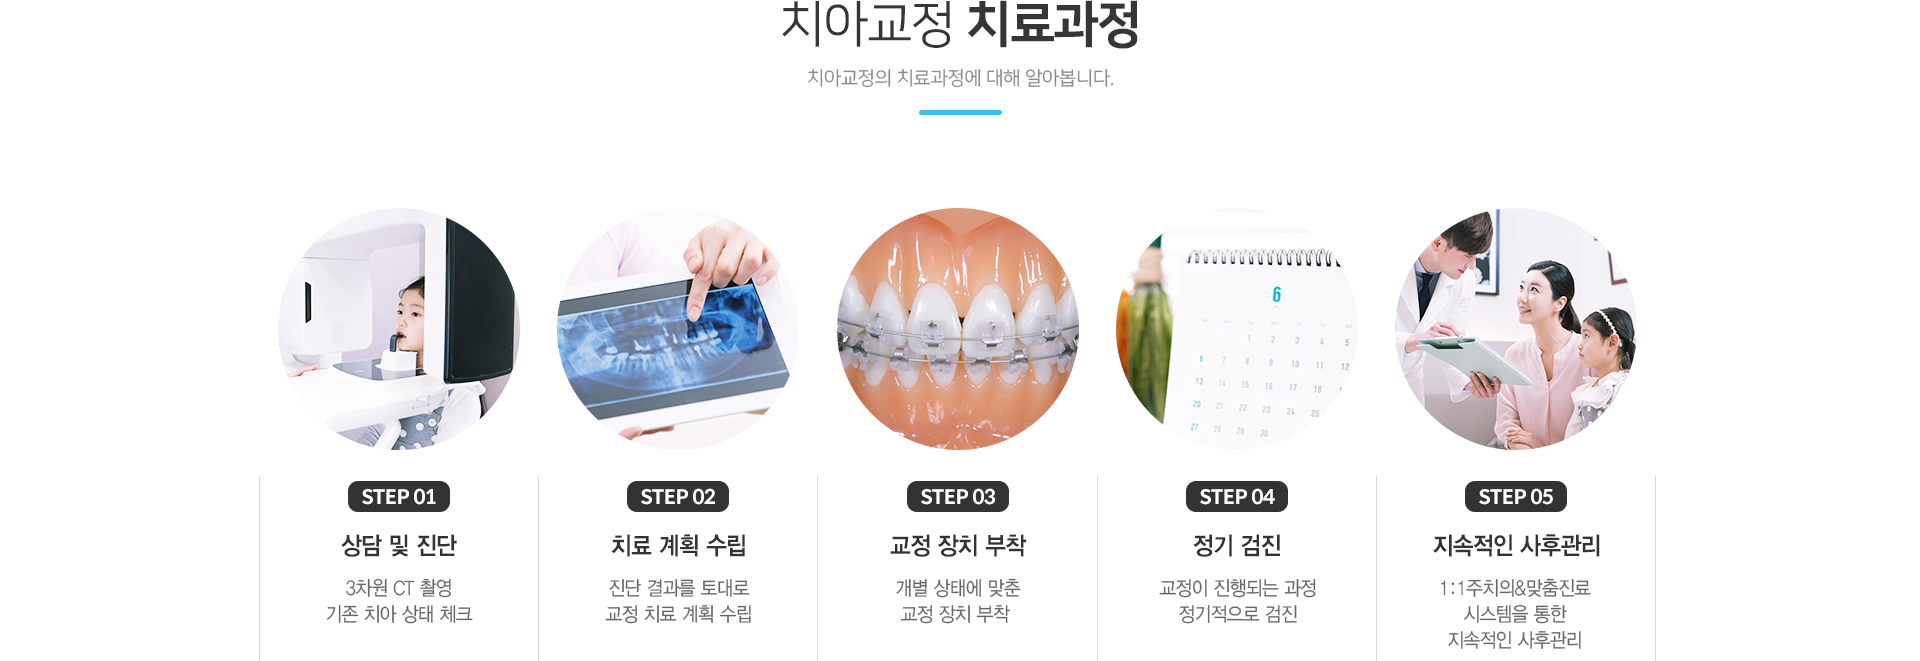 치아교정 치료과정